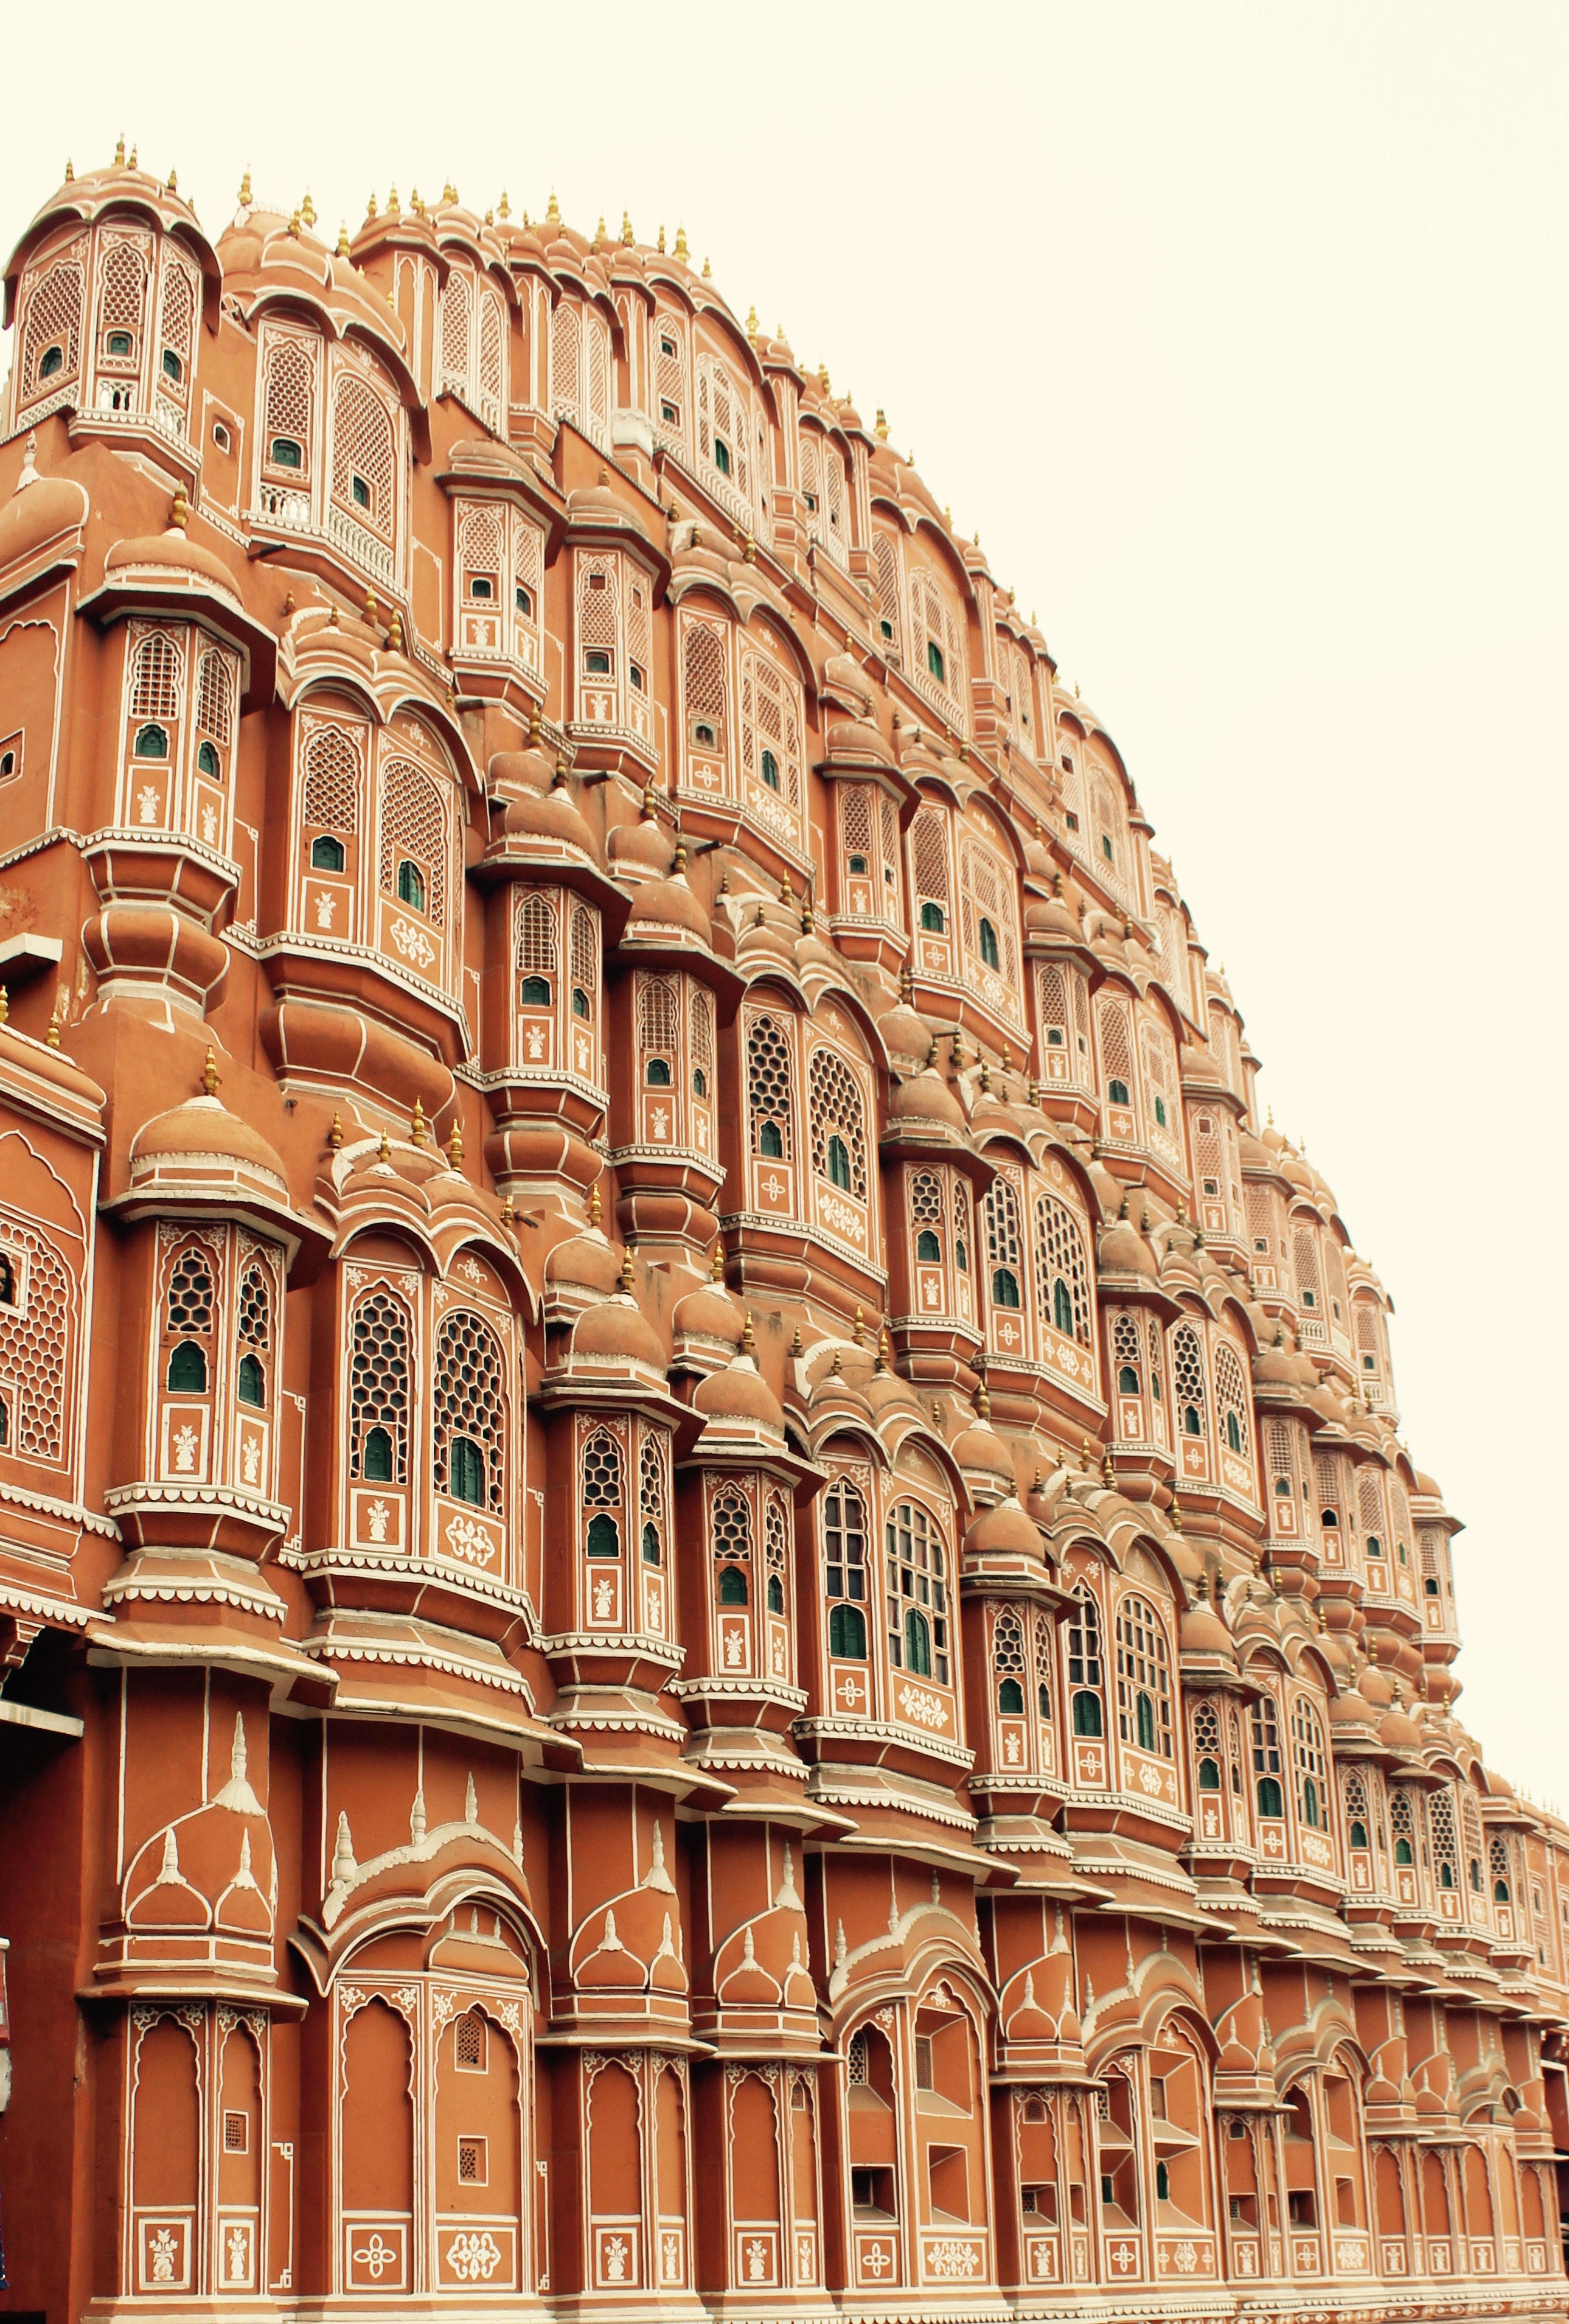 Free of hawamahal, Jaipur, pink city